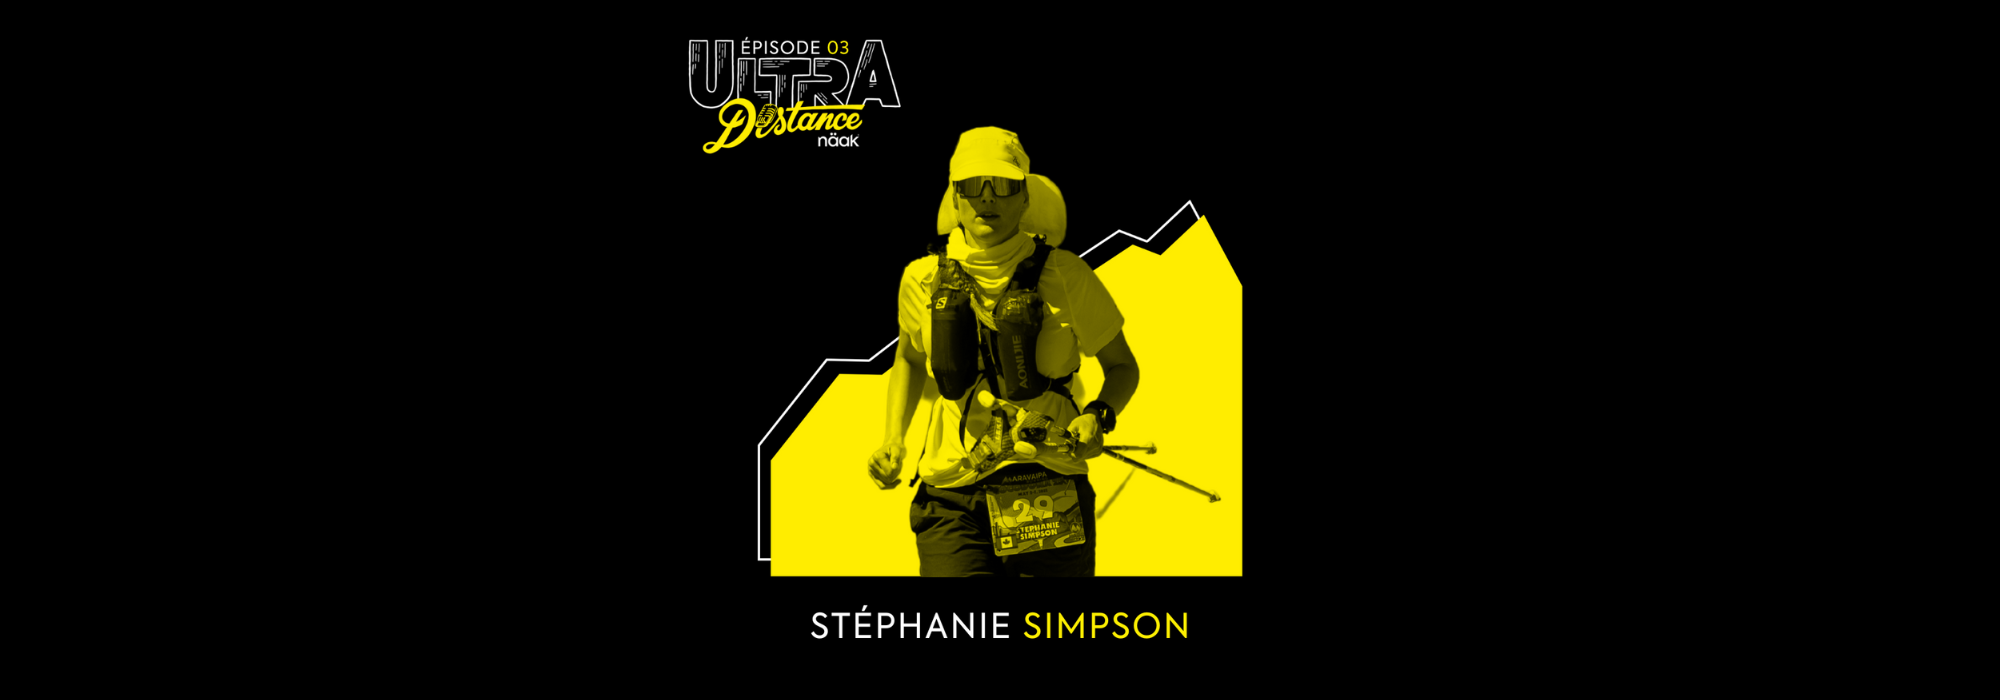 Stéphanie Simpson et sa course épique au Cocodona 250 - Näak ultra distance podcast